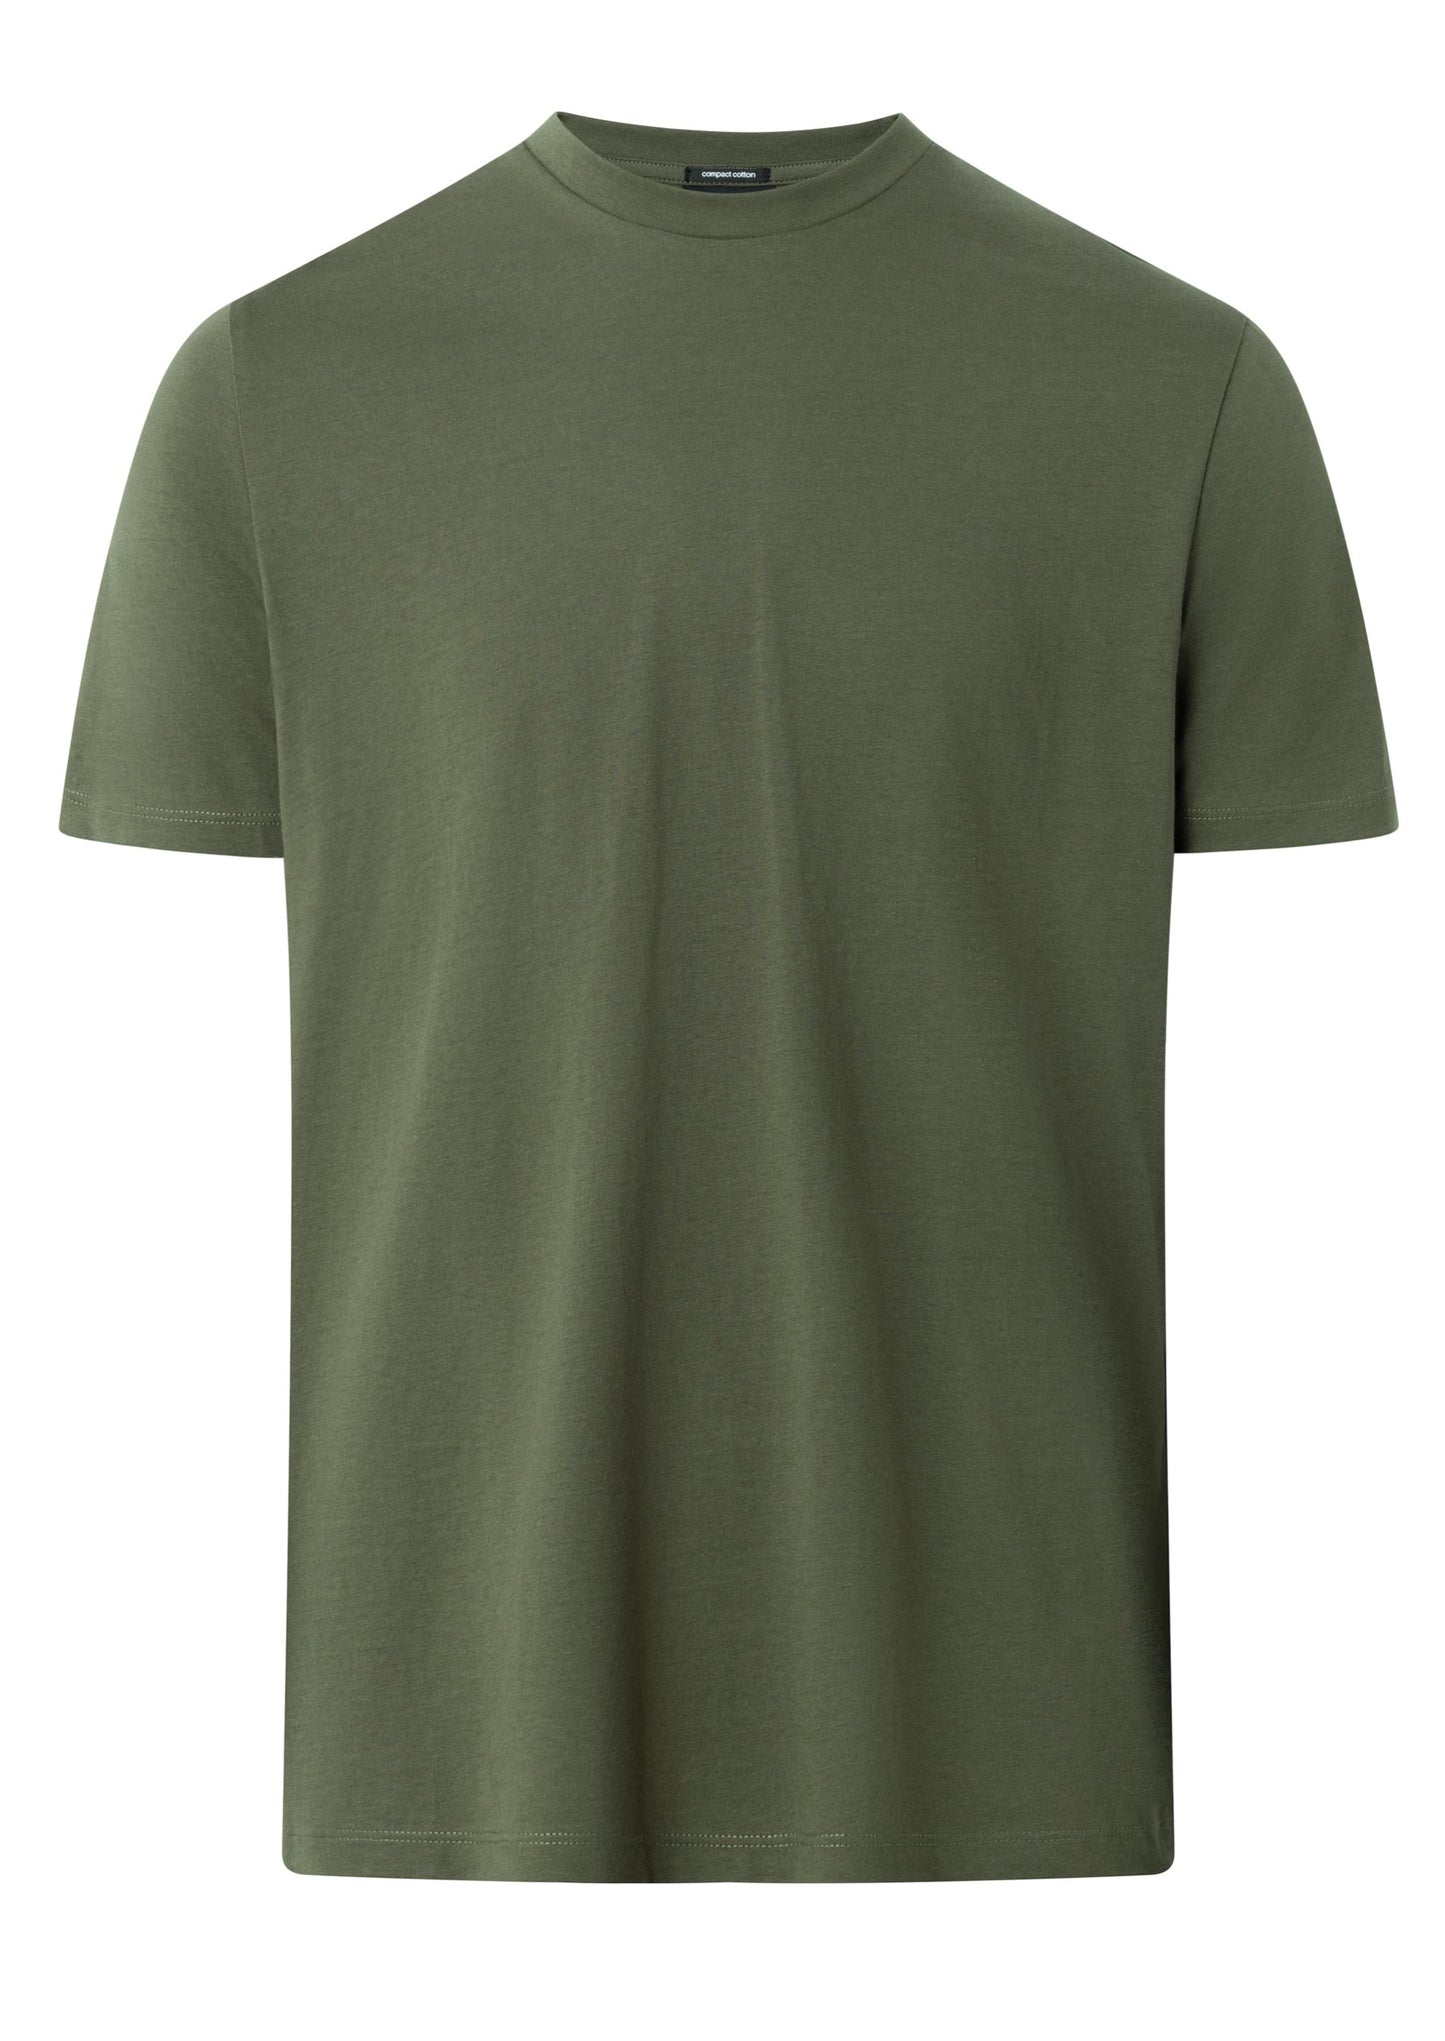 strellson clark shirt in olive green